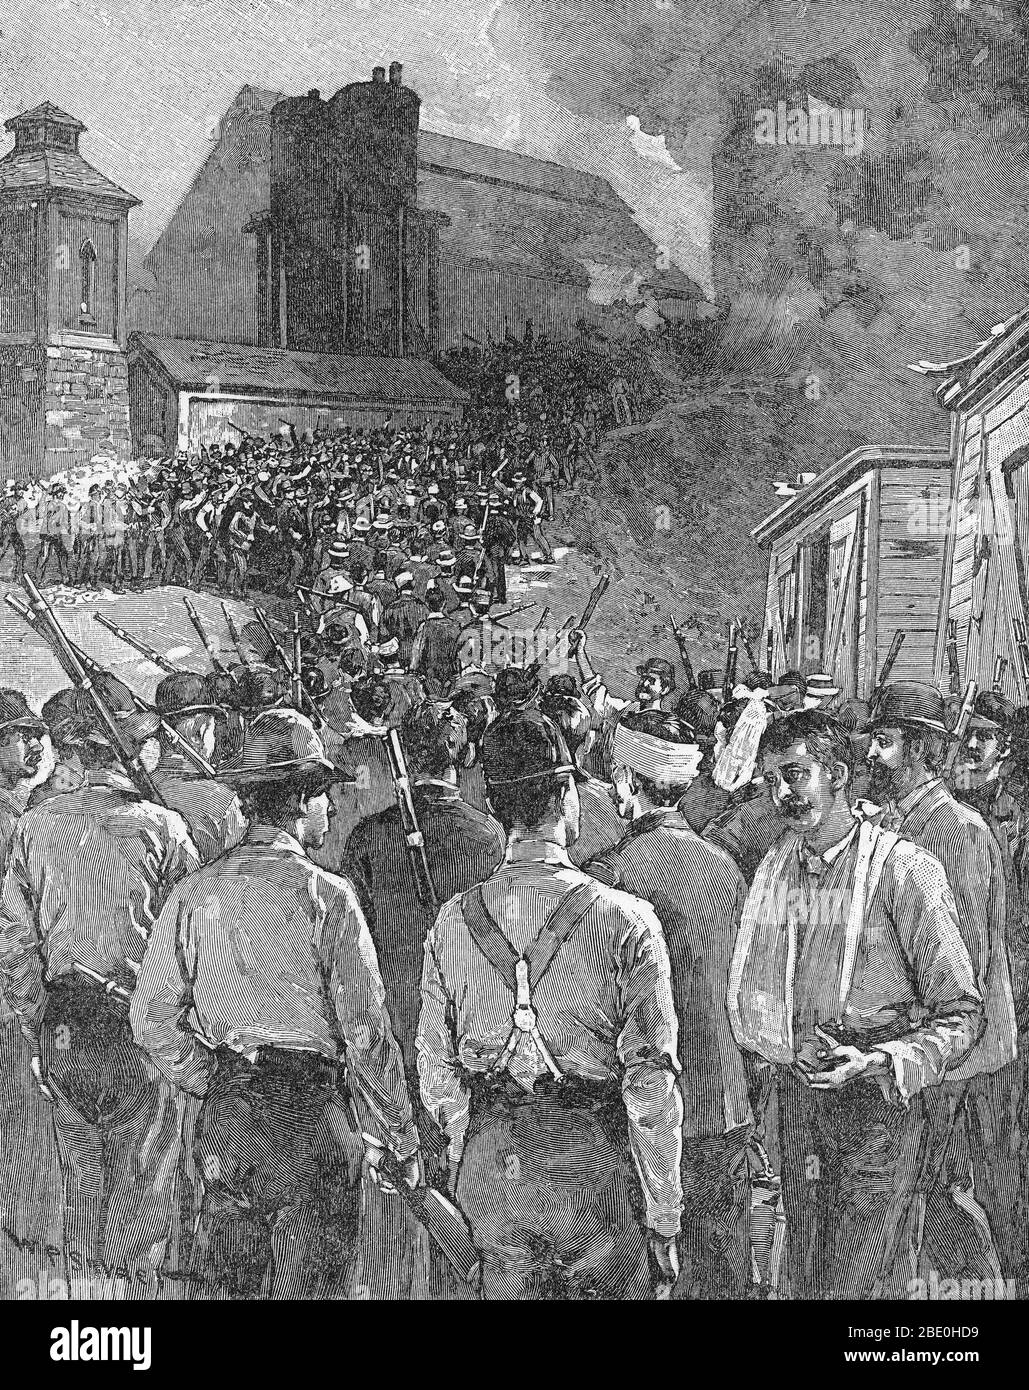 L'Homestead Strike è stato un blocco industriale e di sciopero che ha avuto inizio il 30 giugno 1892, che culminano in una battaglia tra scioperanti e private degli agenti di sicurezza il 6 luglio 1892. La battaglia è stata la seconda più grande e uno dei più gravi conflitti in noi la storia del lavoro seconda solo alla battaglia di Blair Mountain. La controversia si è verificato al Homestead Steel Works nella zona di Pittsburgh Città di Homestead, Pennsylvania, tra l'Associazione amalgamato di lavoratori siderurgici (AA) e la Carnegie Steel Company. Il risultato finale è stata una grave sconfitta per l'Unione e una sconfitta per gli sforzi delle Nazioni Unite Foto Stock